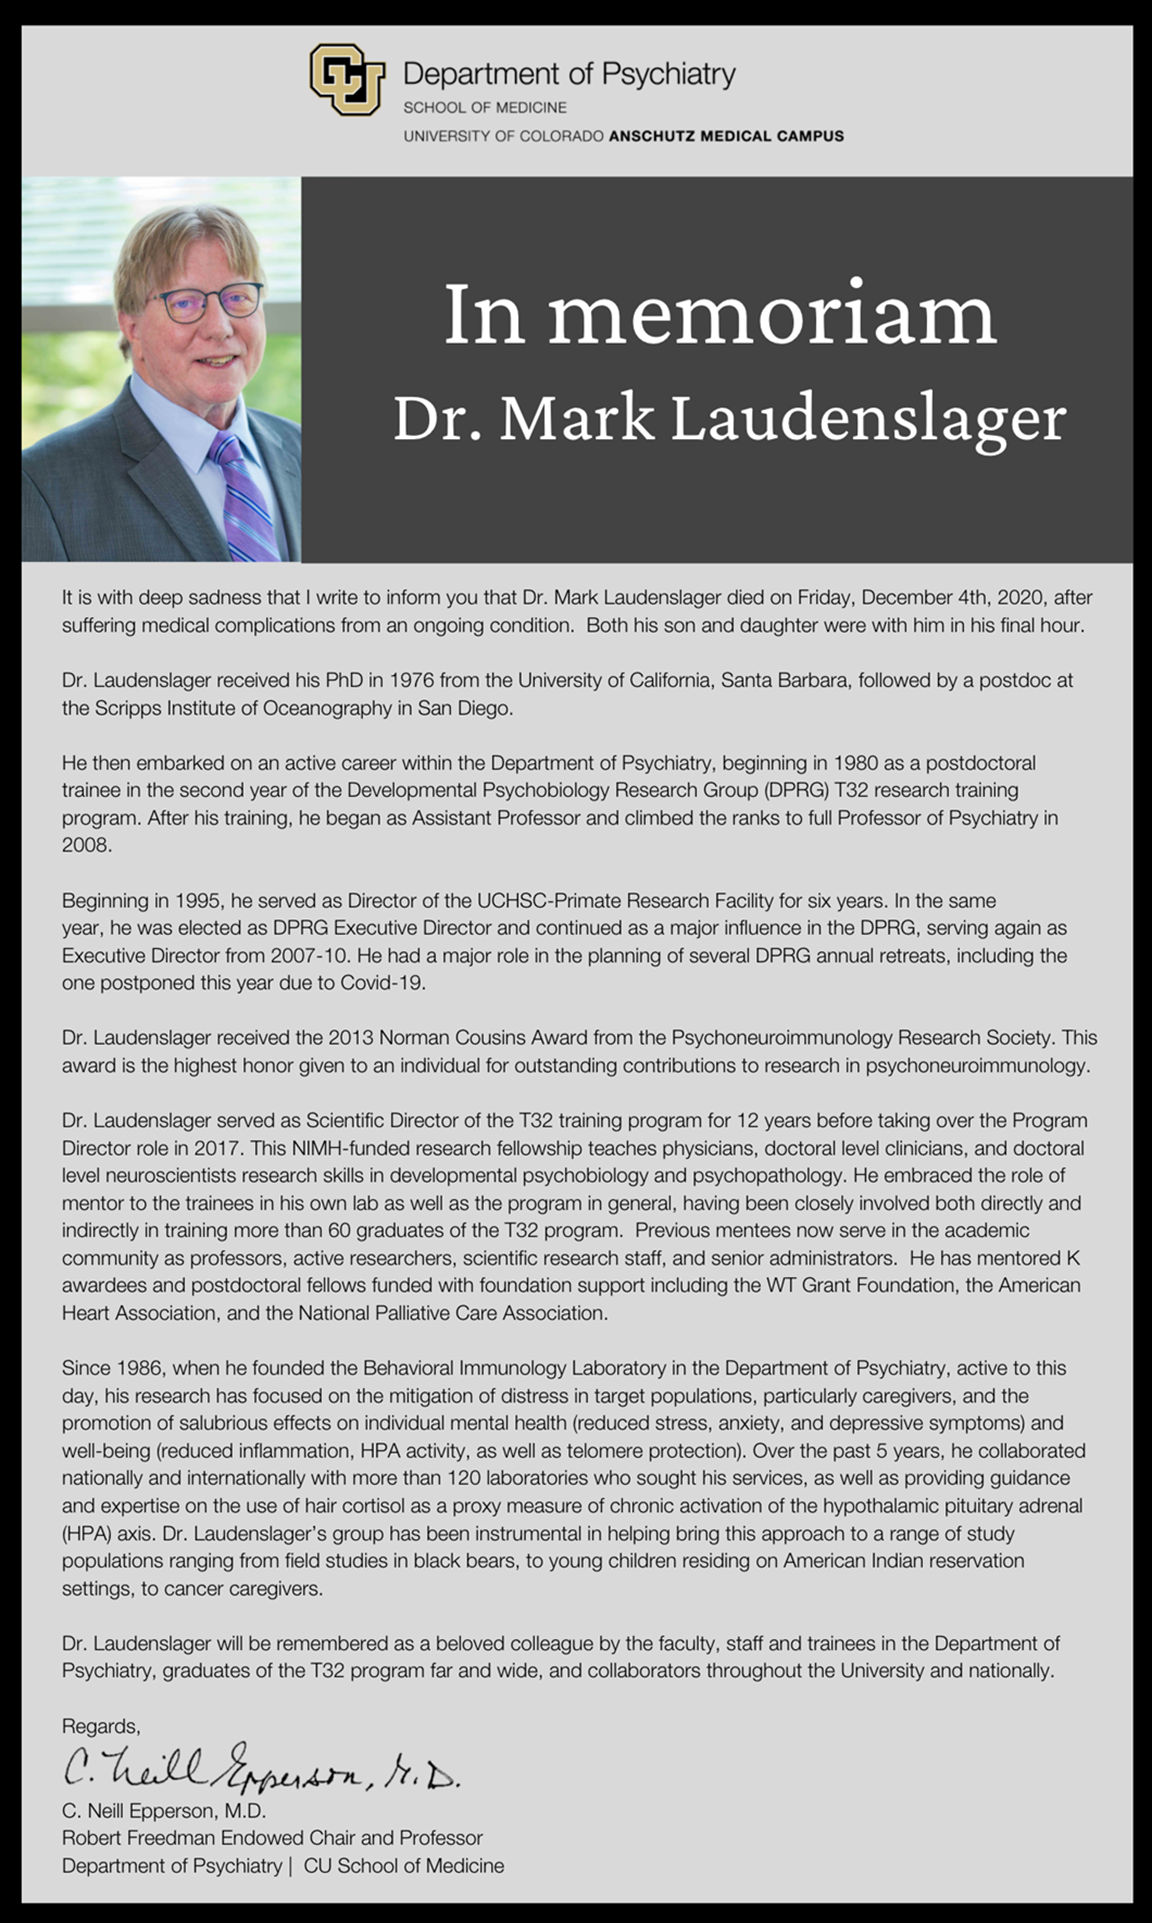 Mark Laudenslager博士